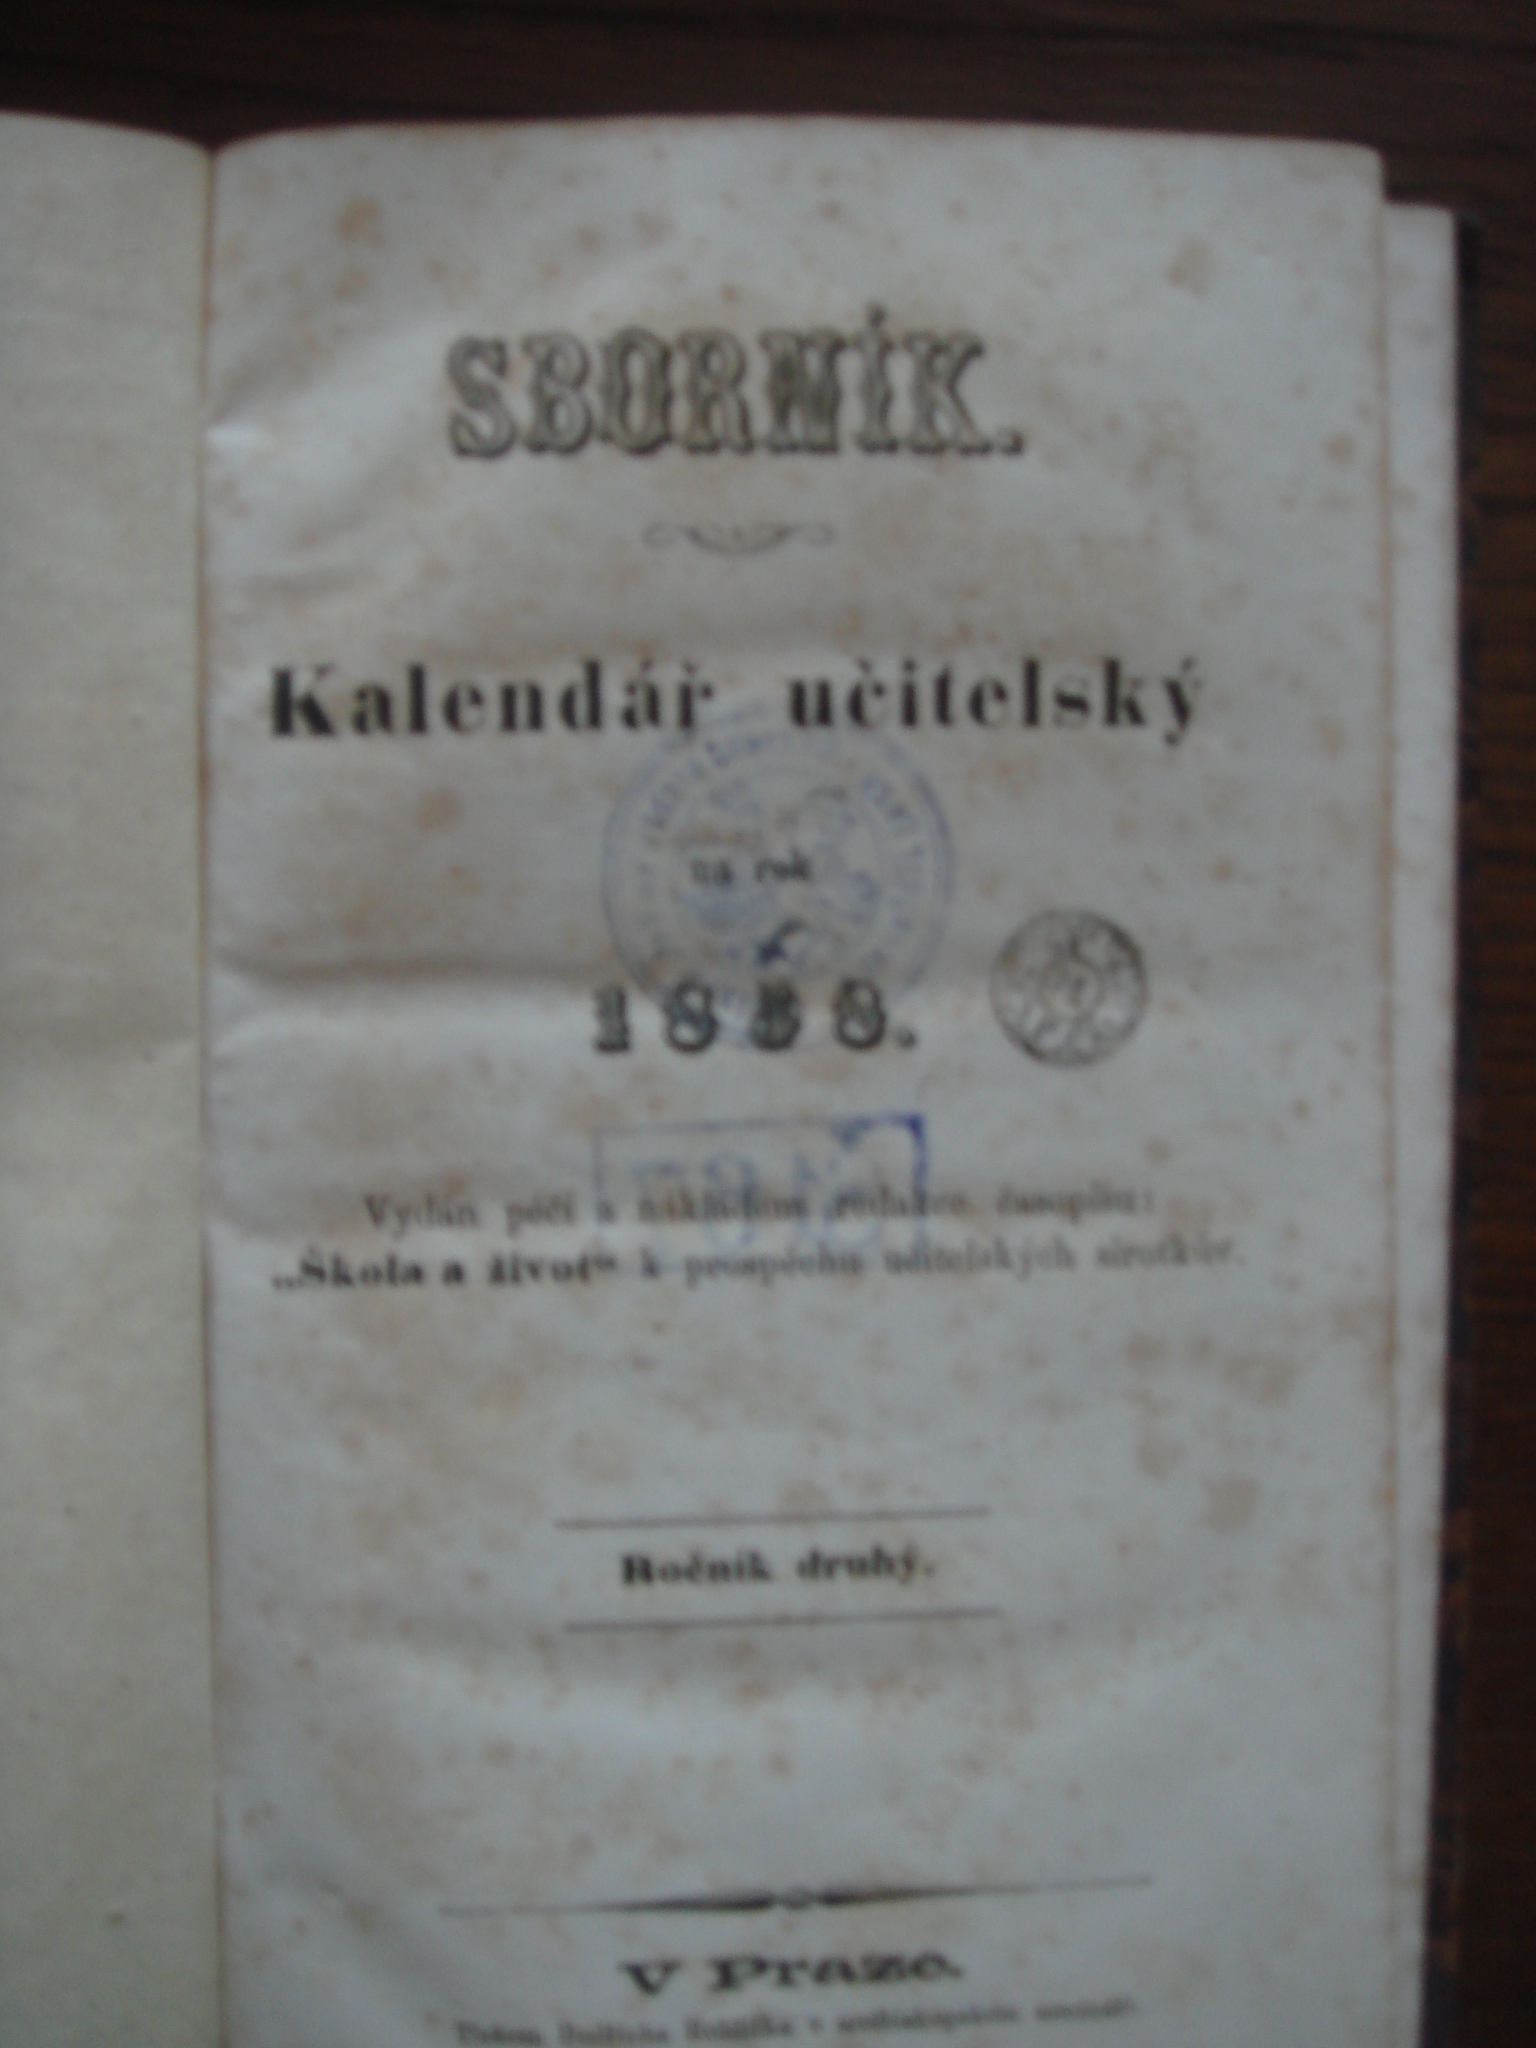 Sborník. Kalendář učitelský na rok 1858, Sborník kalendáře učitelského na rok 1858